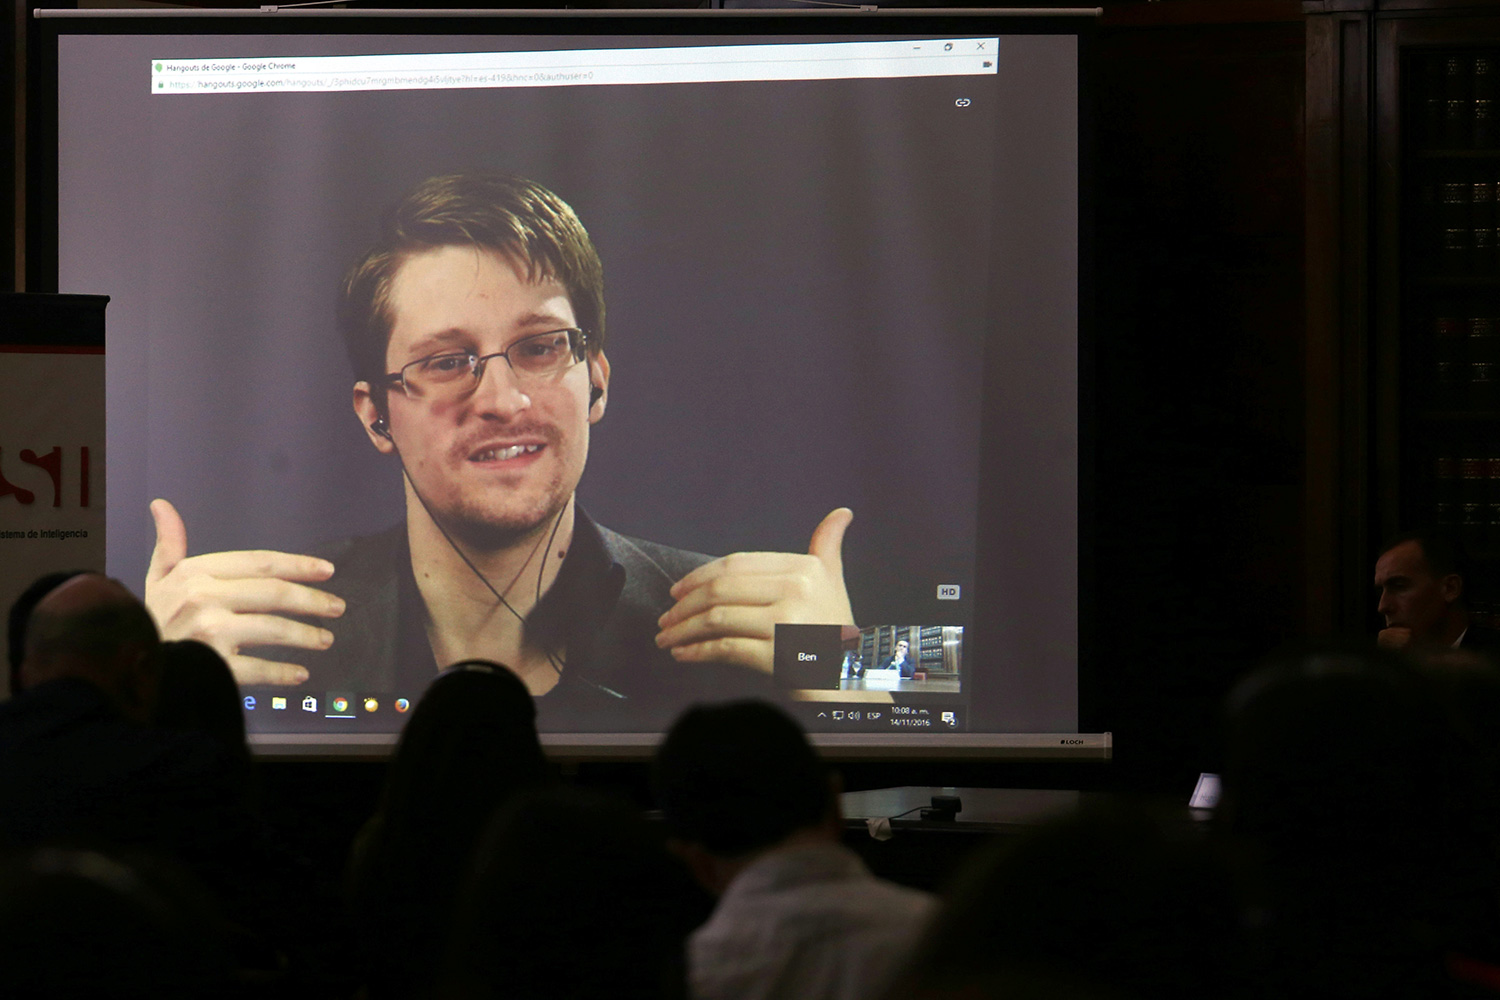 Rusia prorroga el permiso de residencia a Edward Snowden por otros dos años más